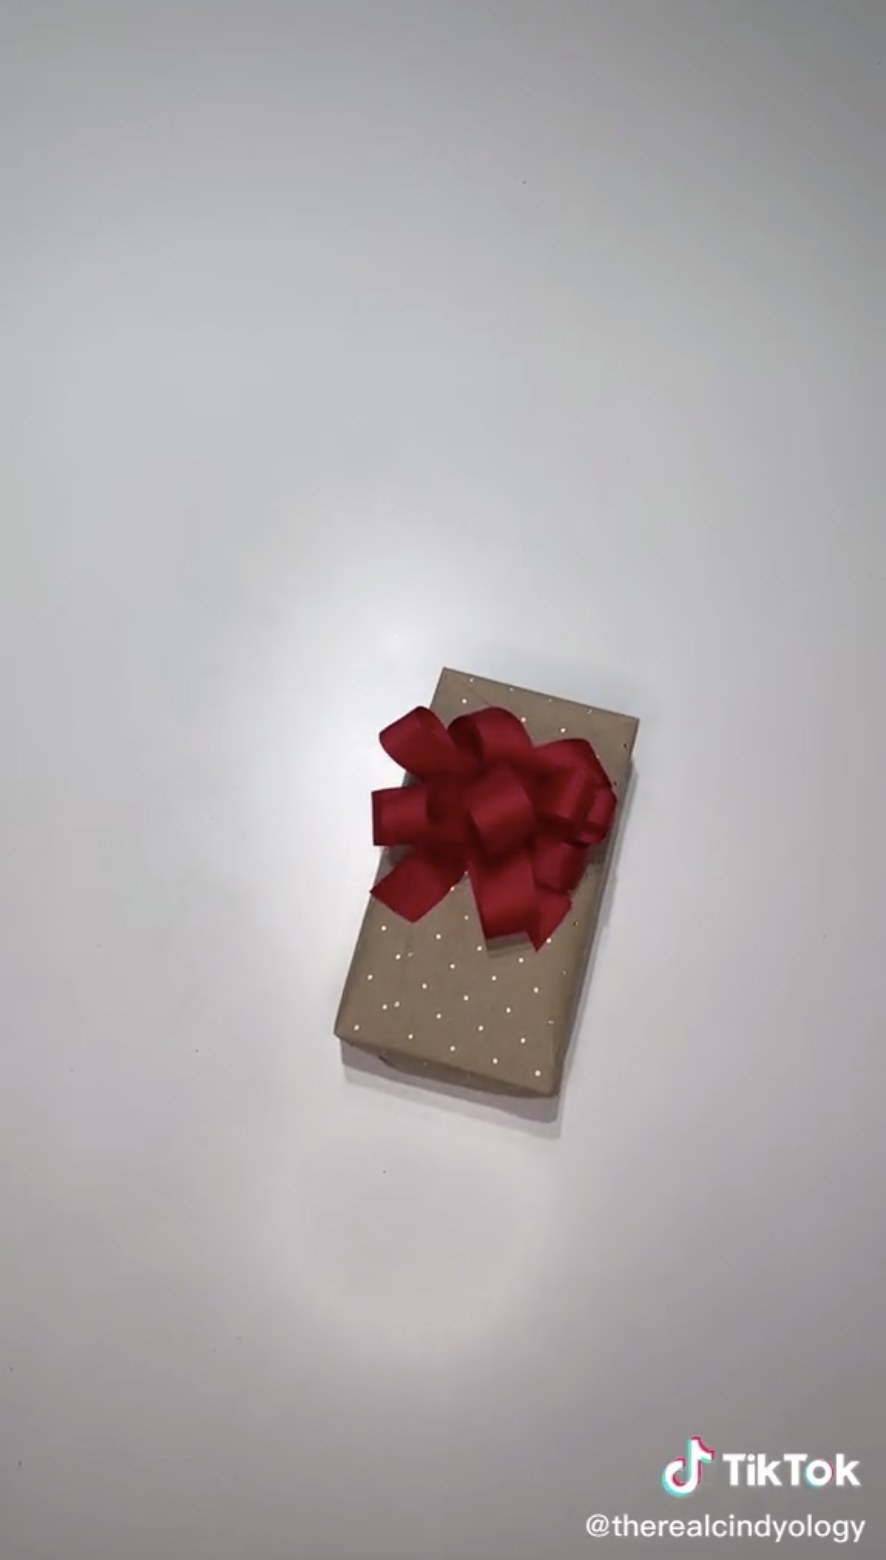 Mobile phone packing gift ideas/Hamper/Nest Box/Phone Packing/Birthday Gift/Anniversary  Gift ideas/ - YouTube